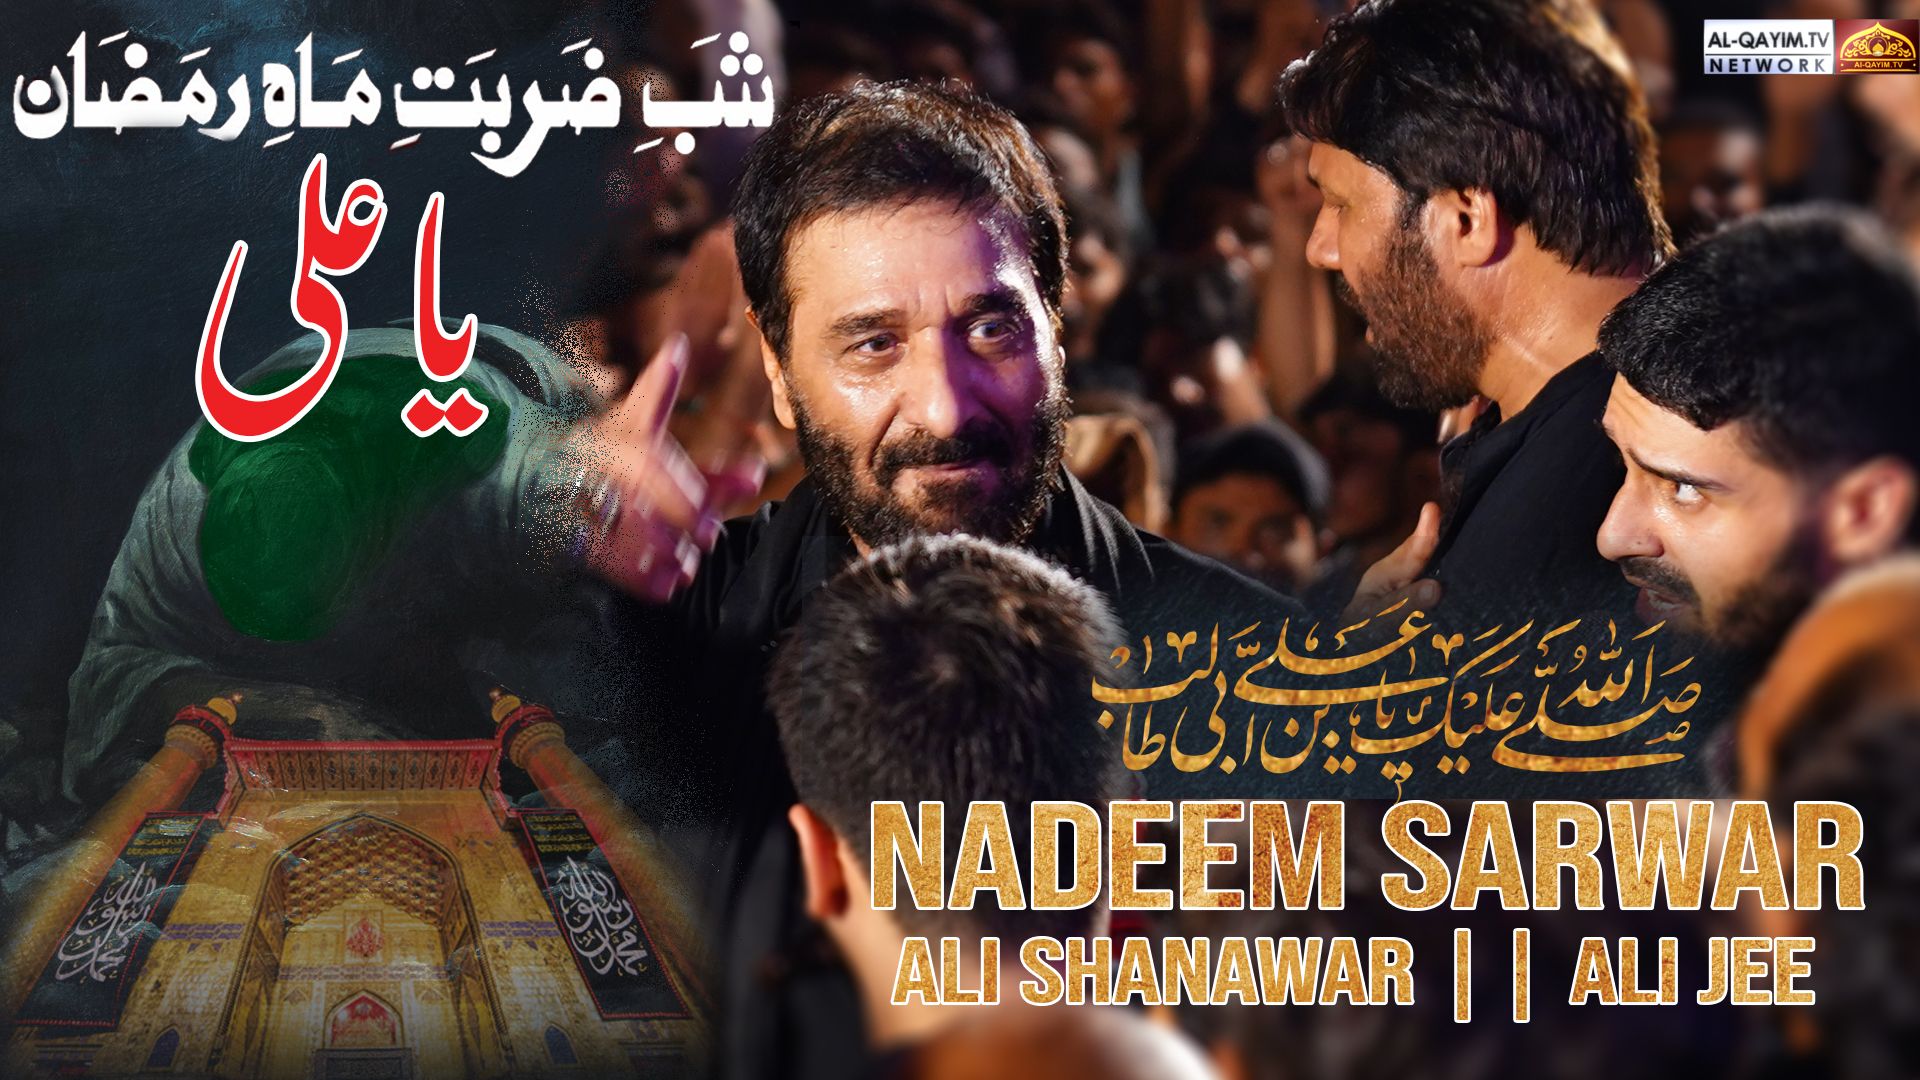 Shab-e-Zarbat-e-Mah-e-Ramzan Ya Ali || Nadeem Sarwar || Ali Shanawar || Ali Jee || Shahdat Mola Ali